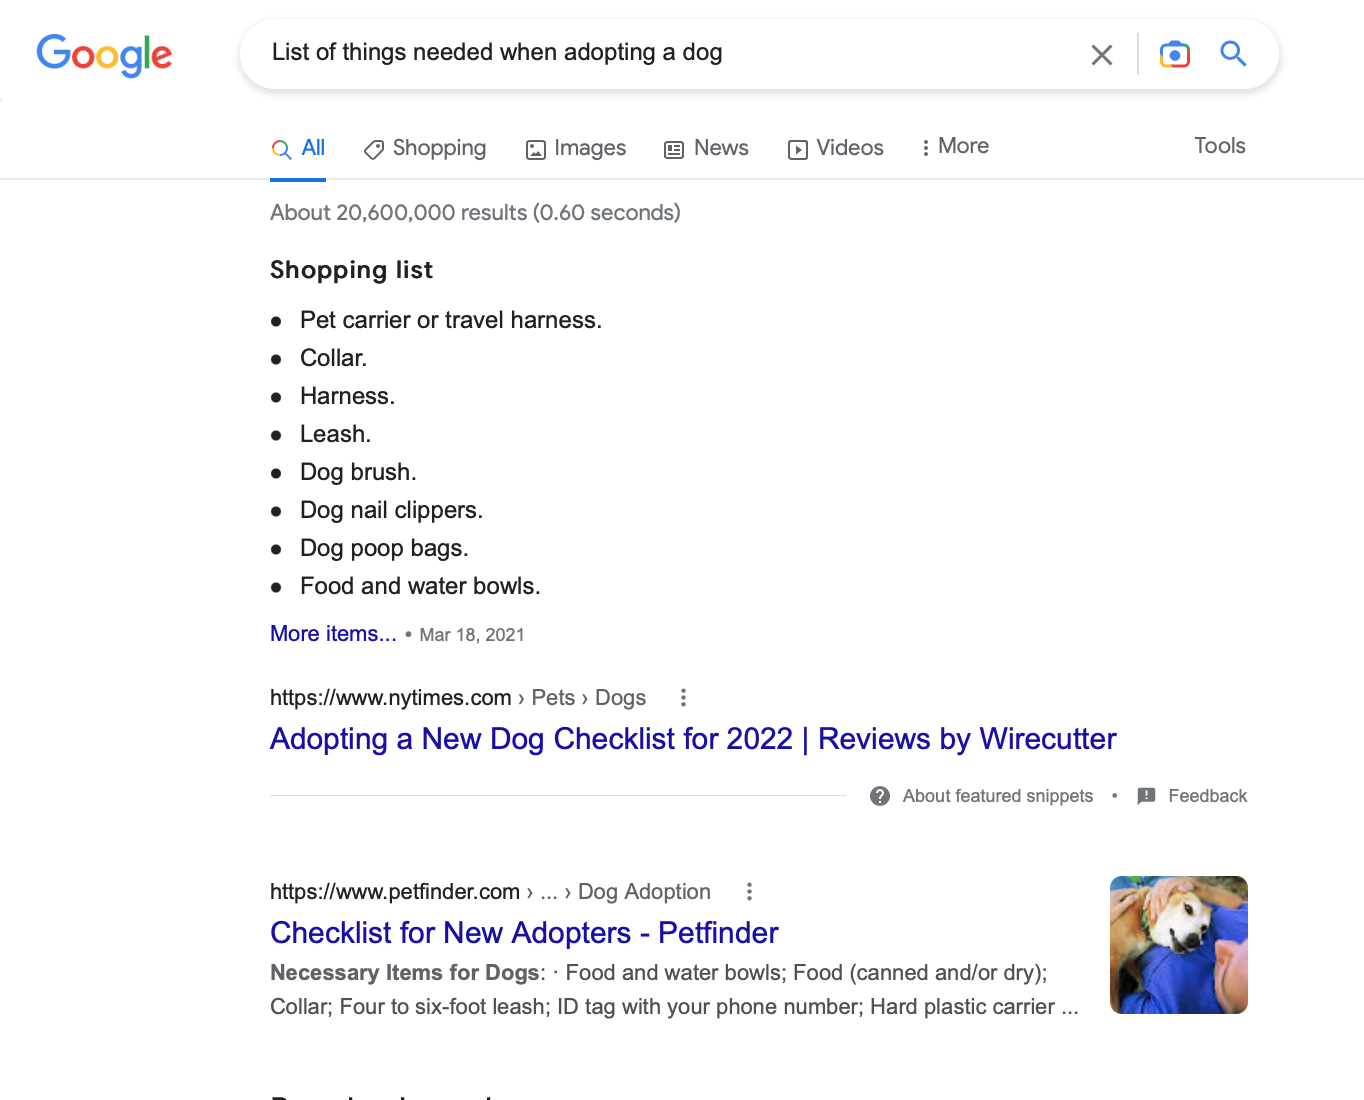 Скриншот для поискового запроса «Список вещей, необходимых при усыновлении собаки» в Google